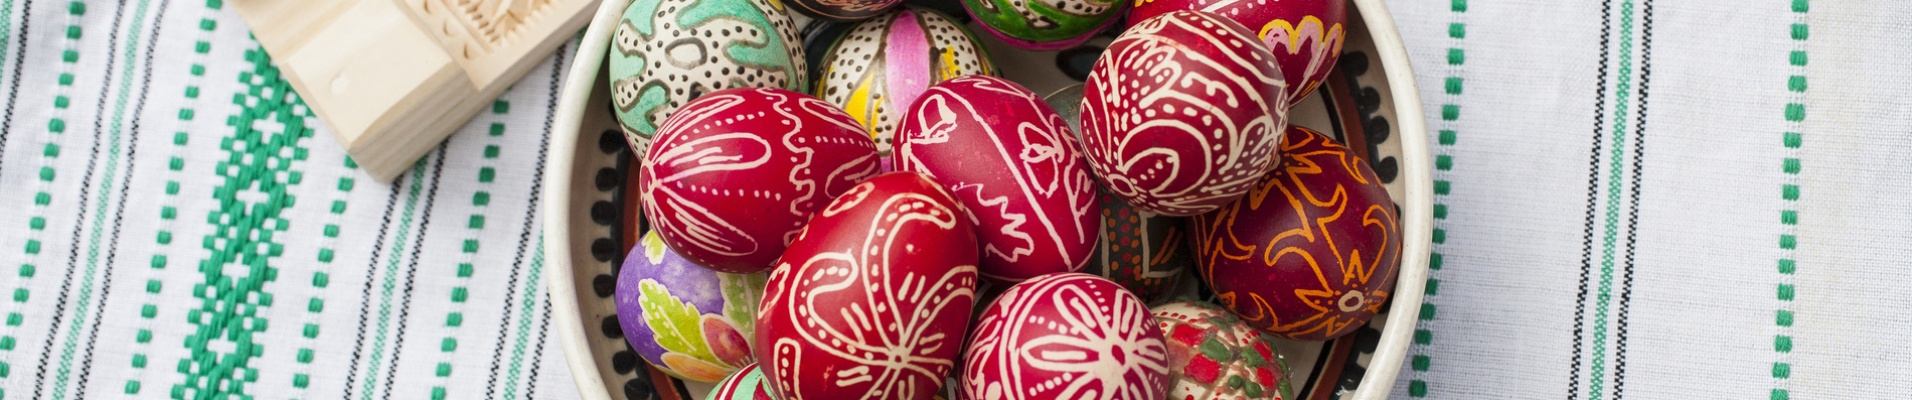 Oeufs traditionnels de Pâques Serbie